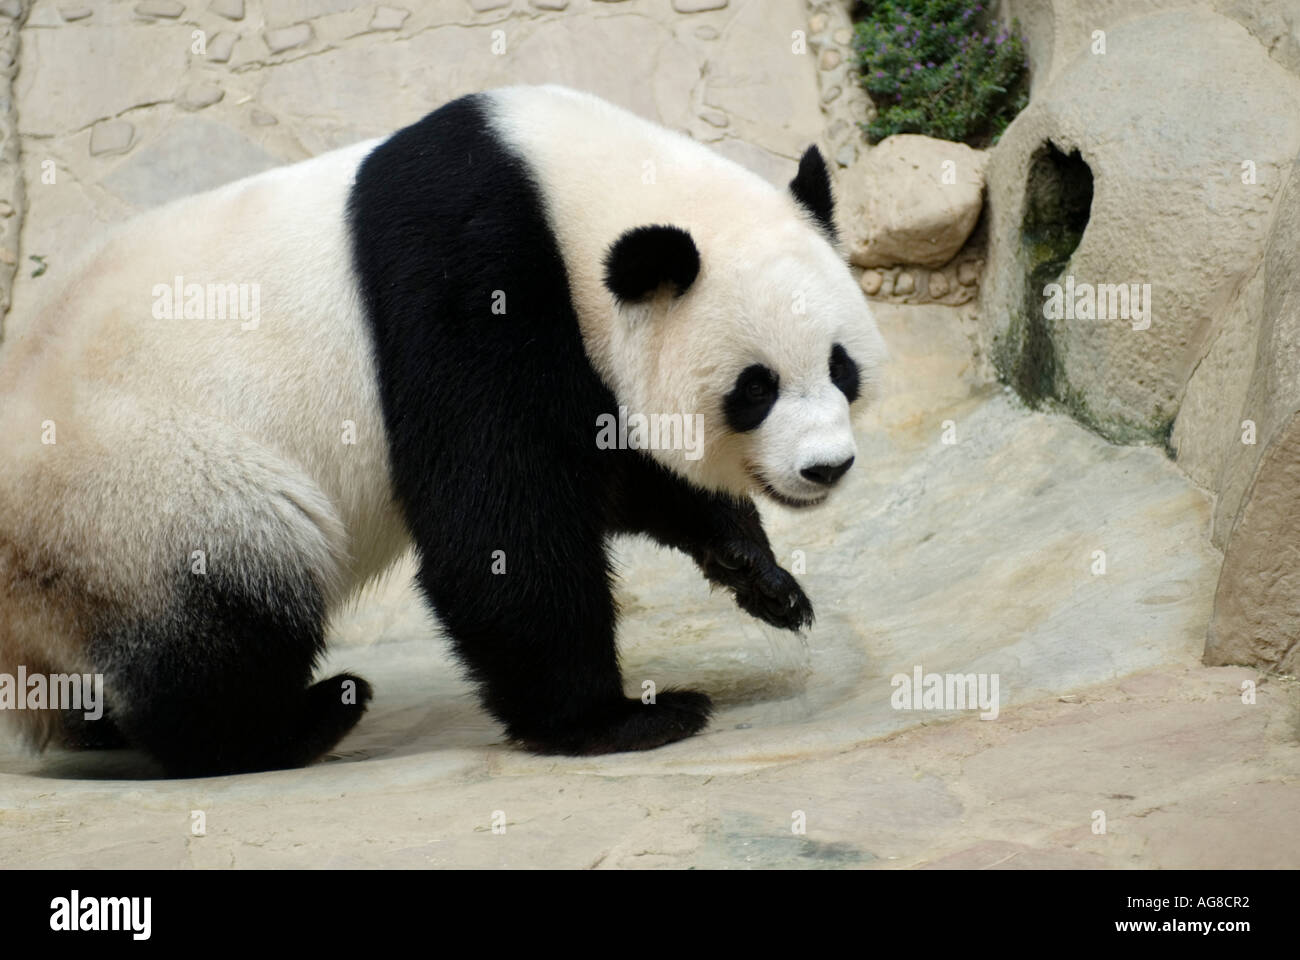 Giant Panda Thailand Chiang Mai Zoo Stock Photo